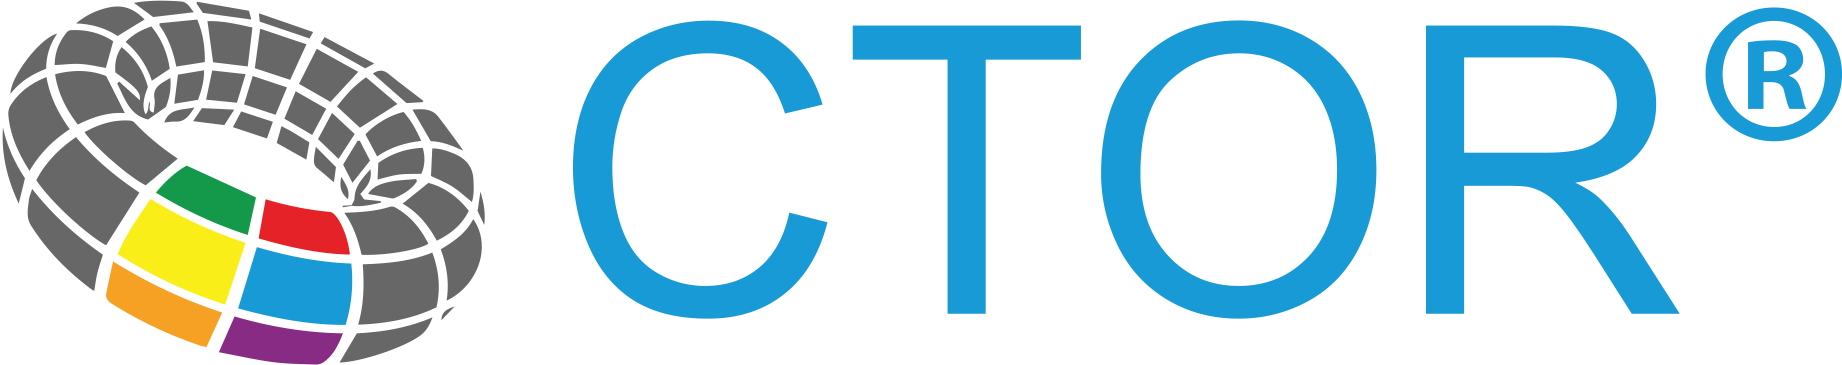 Original CTOR logo